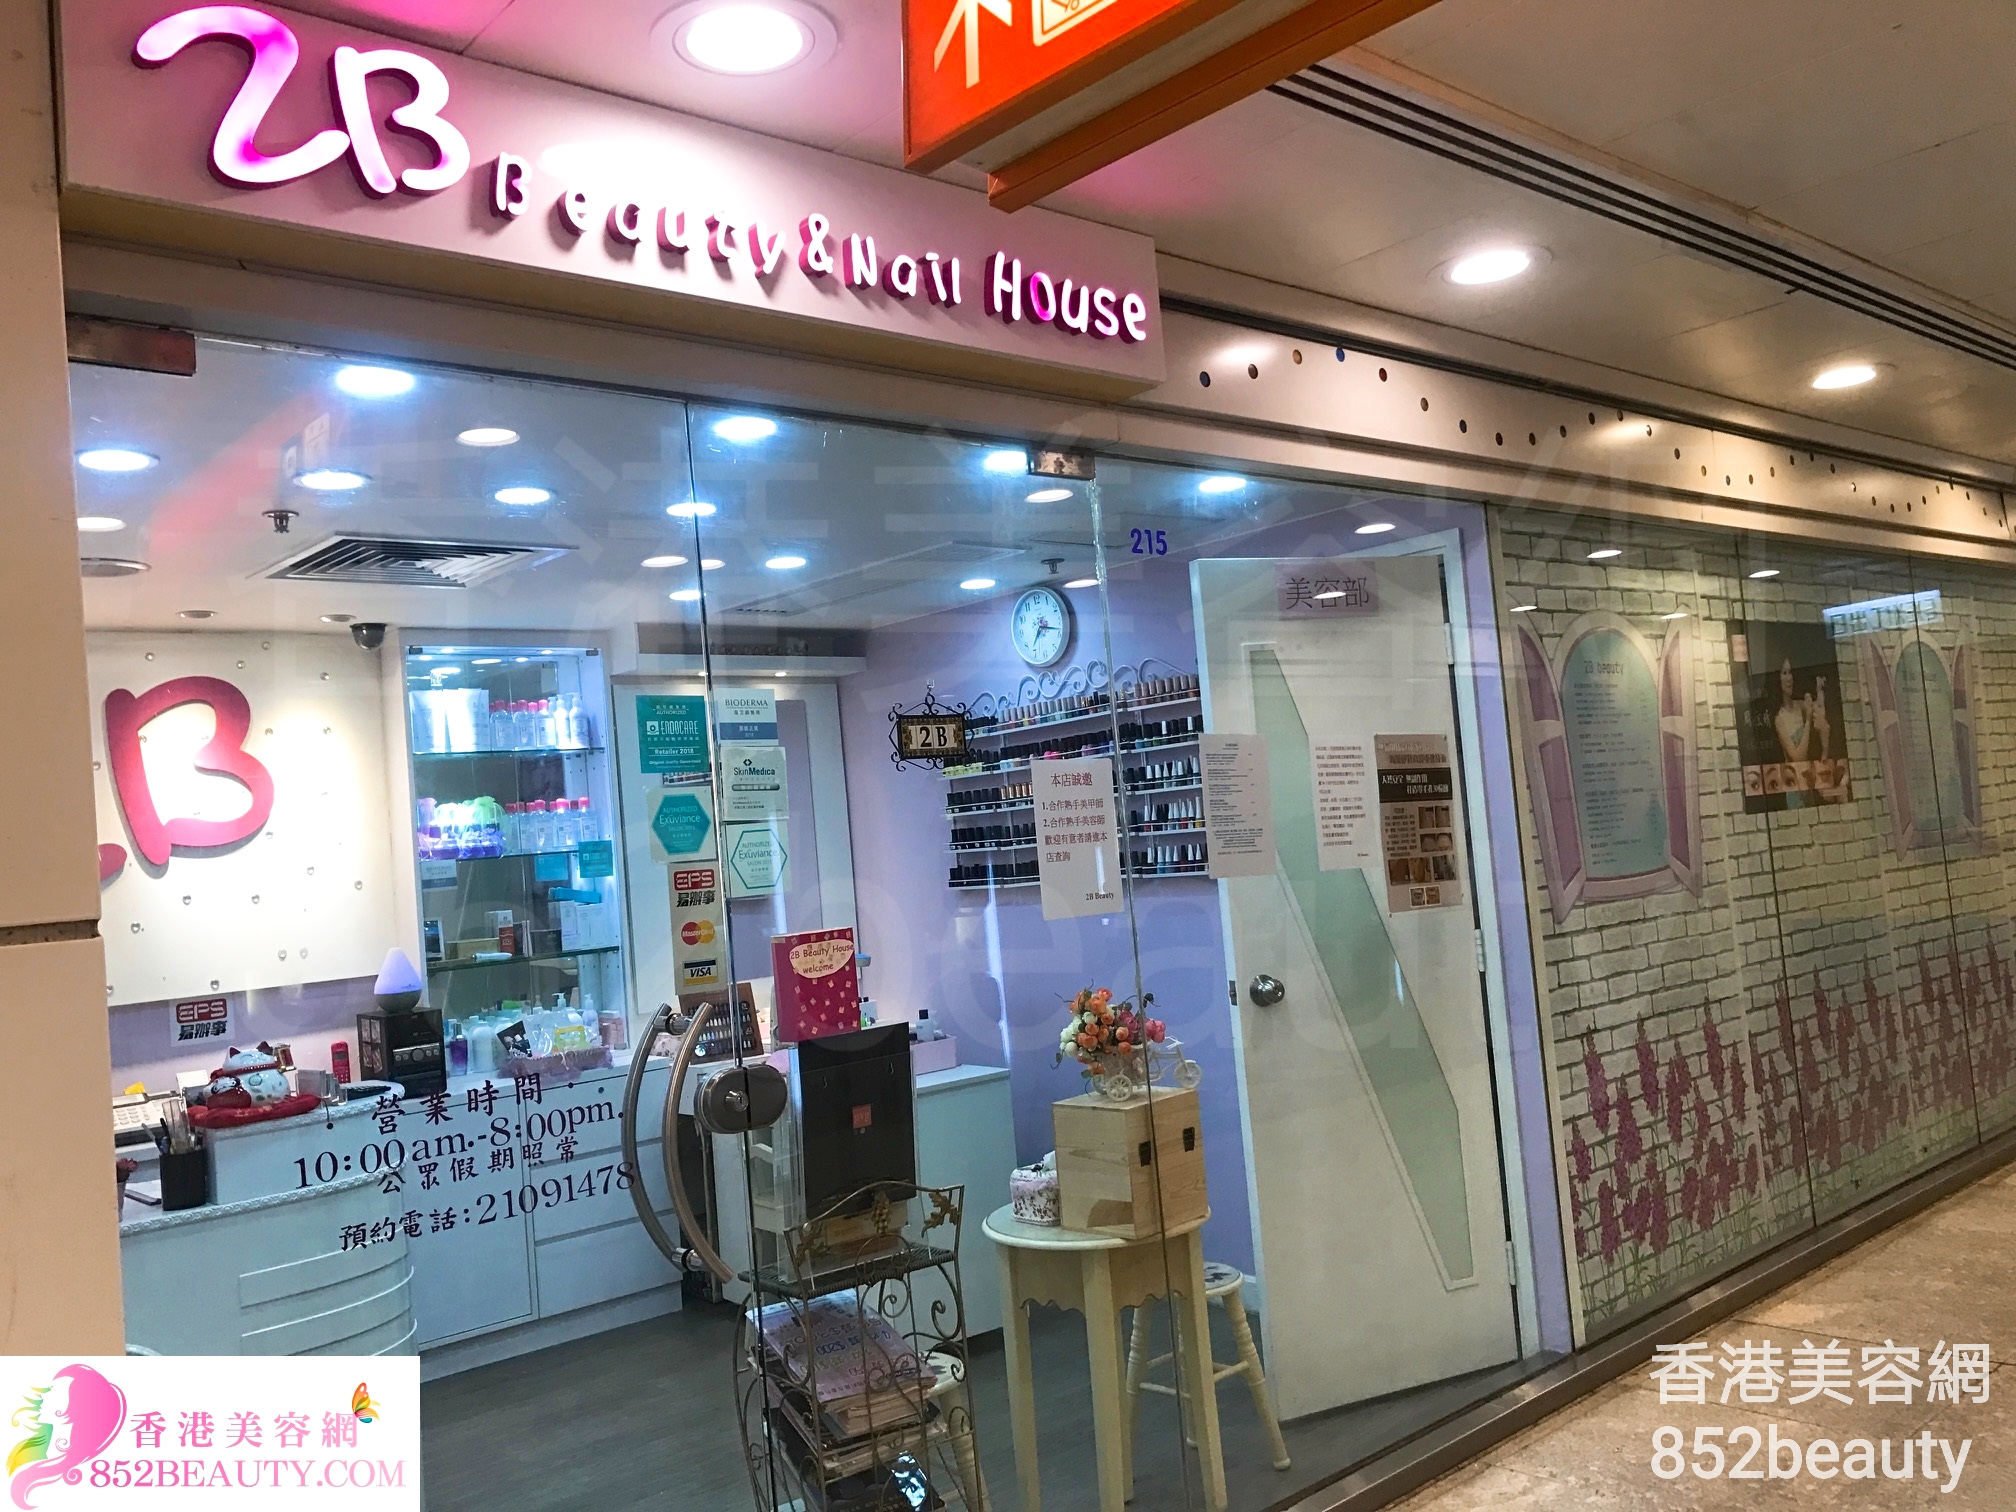 香港美容網 Hong Kong Beauty Salon 美容院 / 美容師: 2B Beauty & Nail House